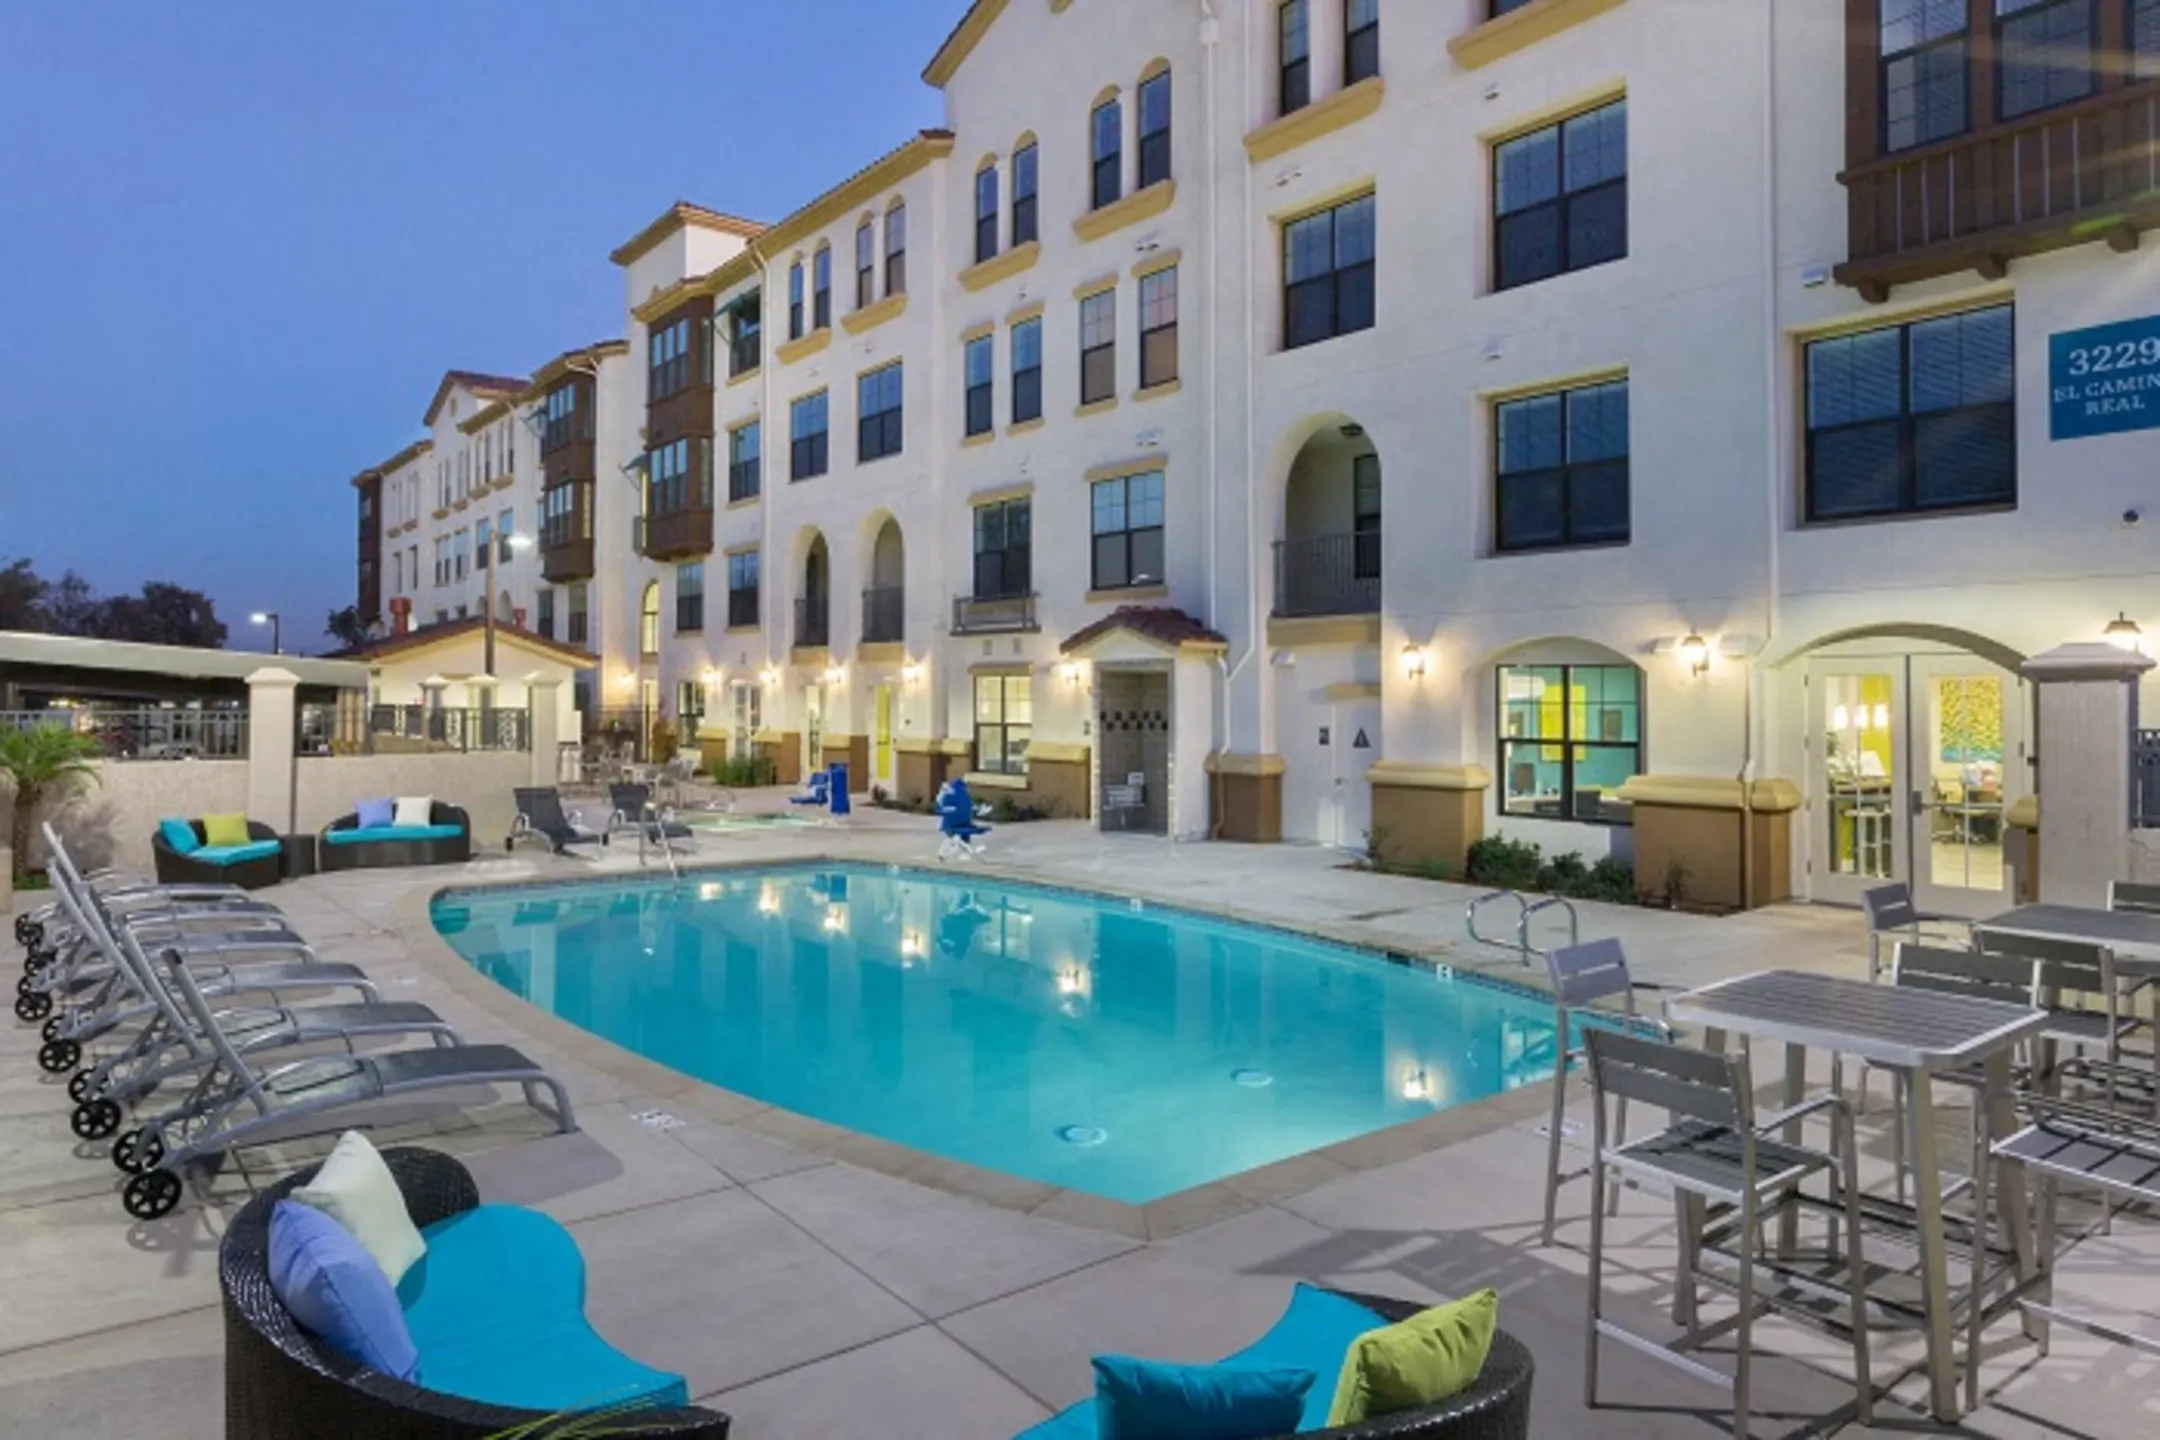 Pool - Tuscany Apartments - Santa Clara, CA